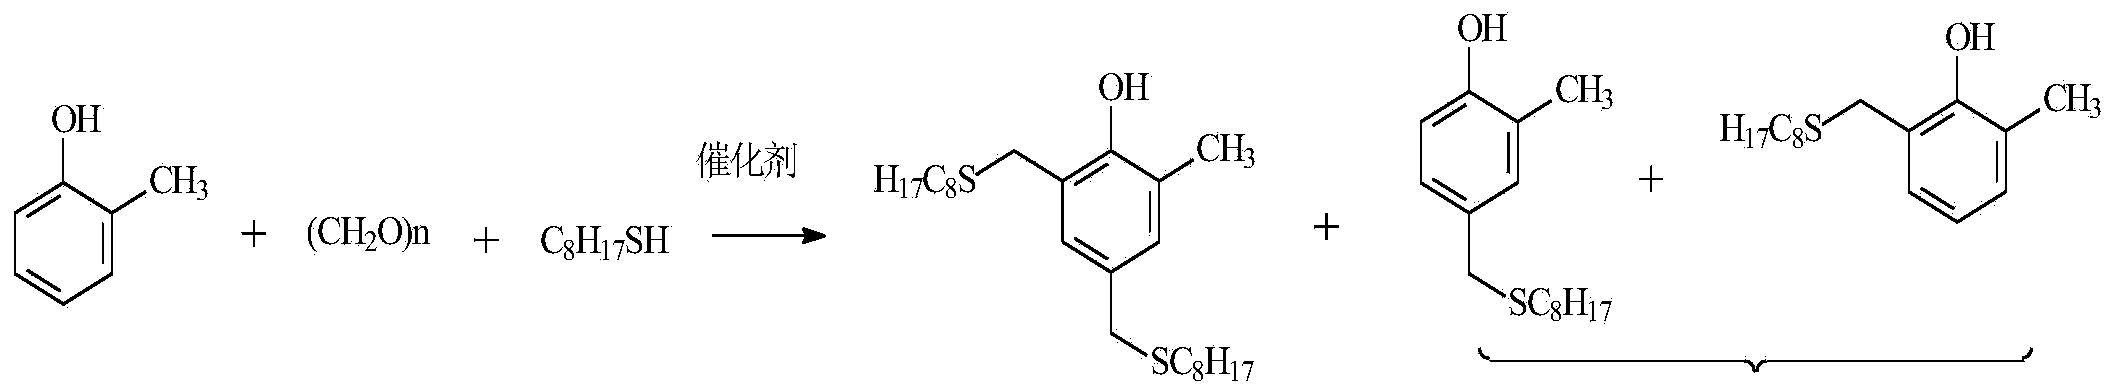 Preparation method of liquid antioxidant 4,6-di(octylsulfanylmethyl) o-cresol